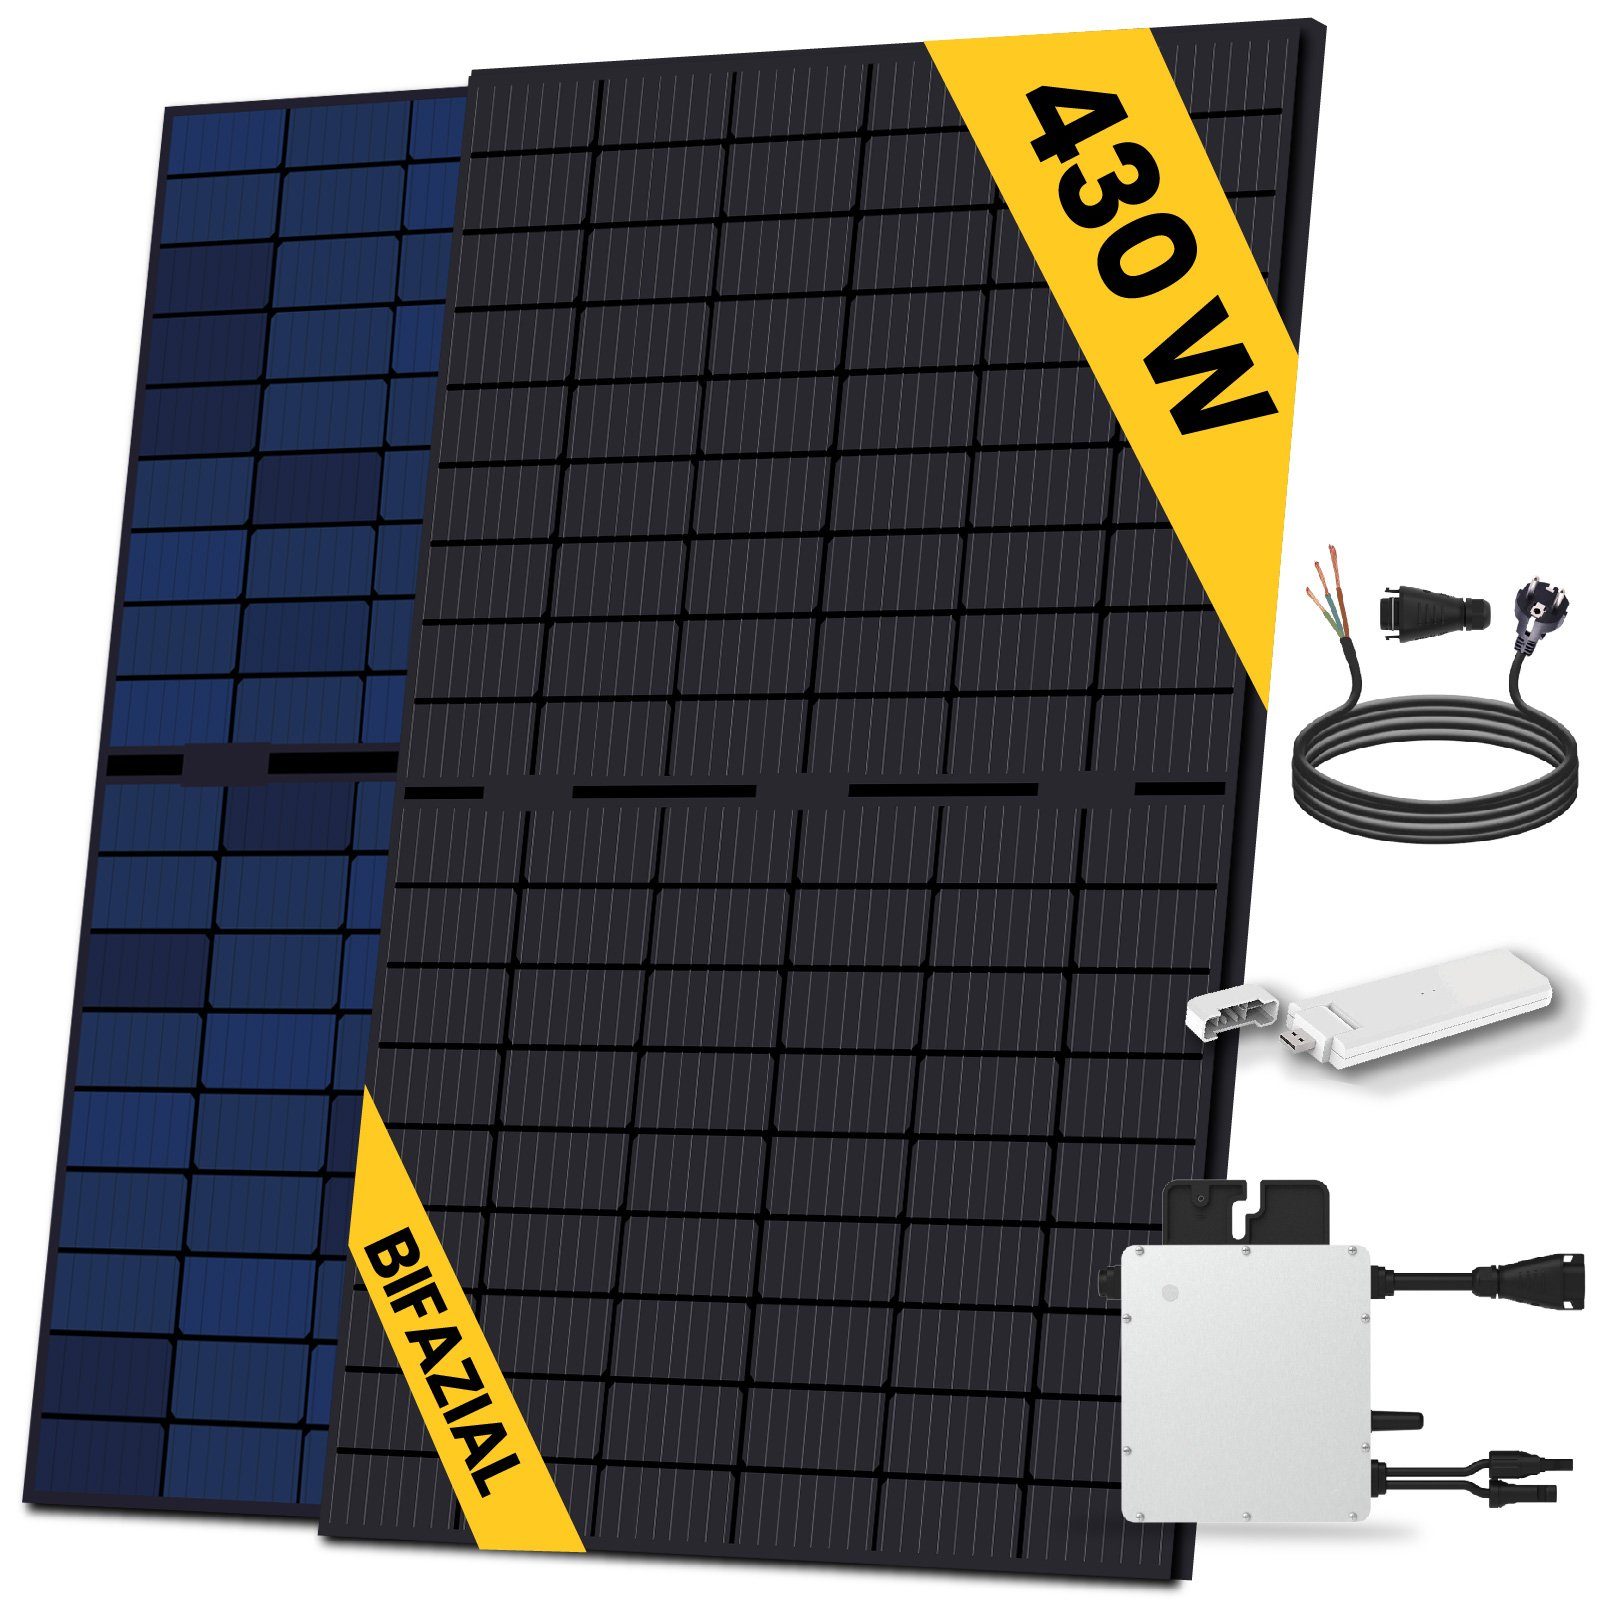 EPP.Solar Solaranlage 430W Bifazial Balkonkraftwerk Komplettset Balkon Mini-PV Anlage, Monokristallin, (Mit HMS-400-1T Wechselrichter, DTU-WLite-S und 10m Schukostecker)